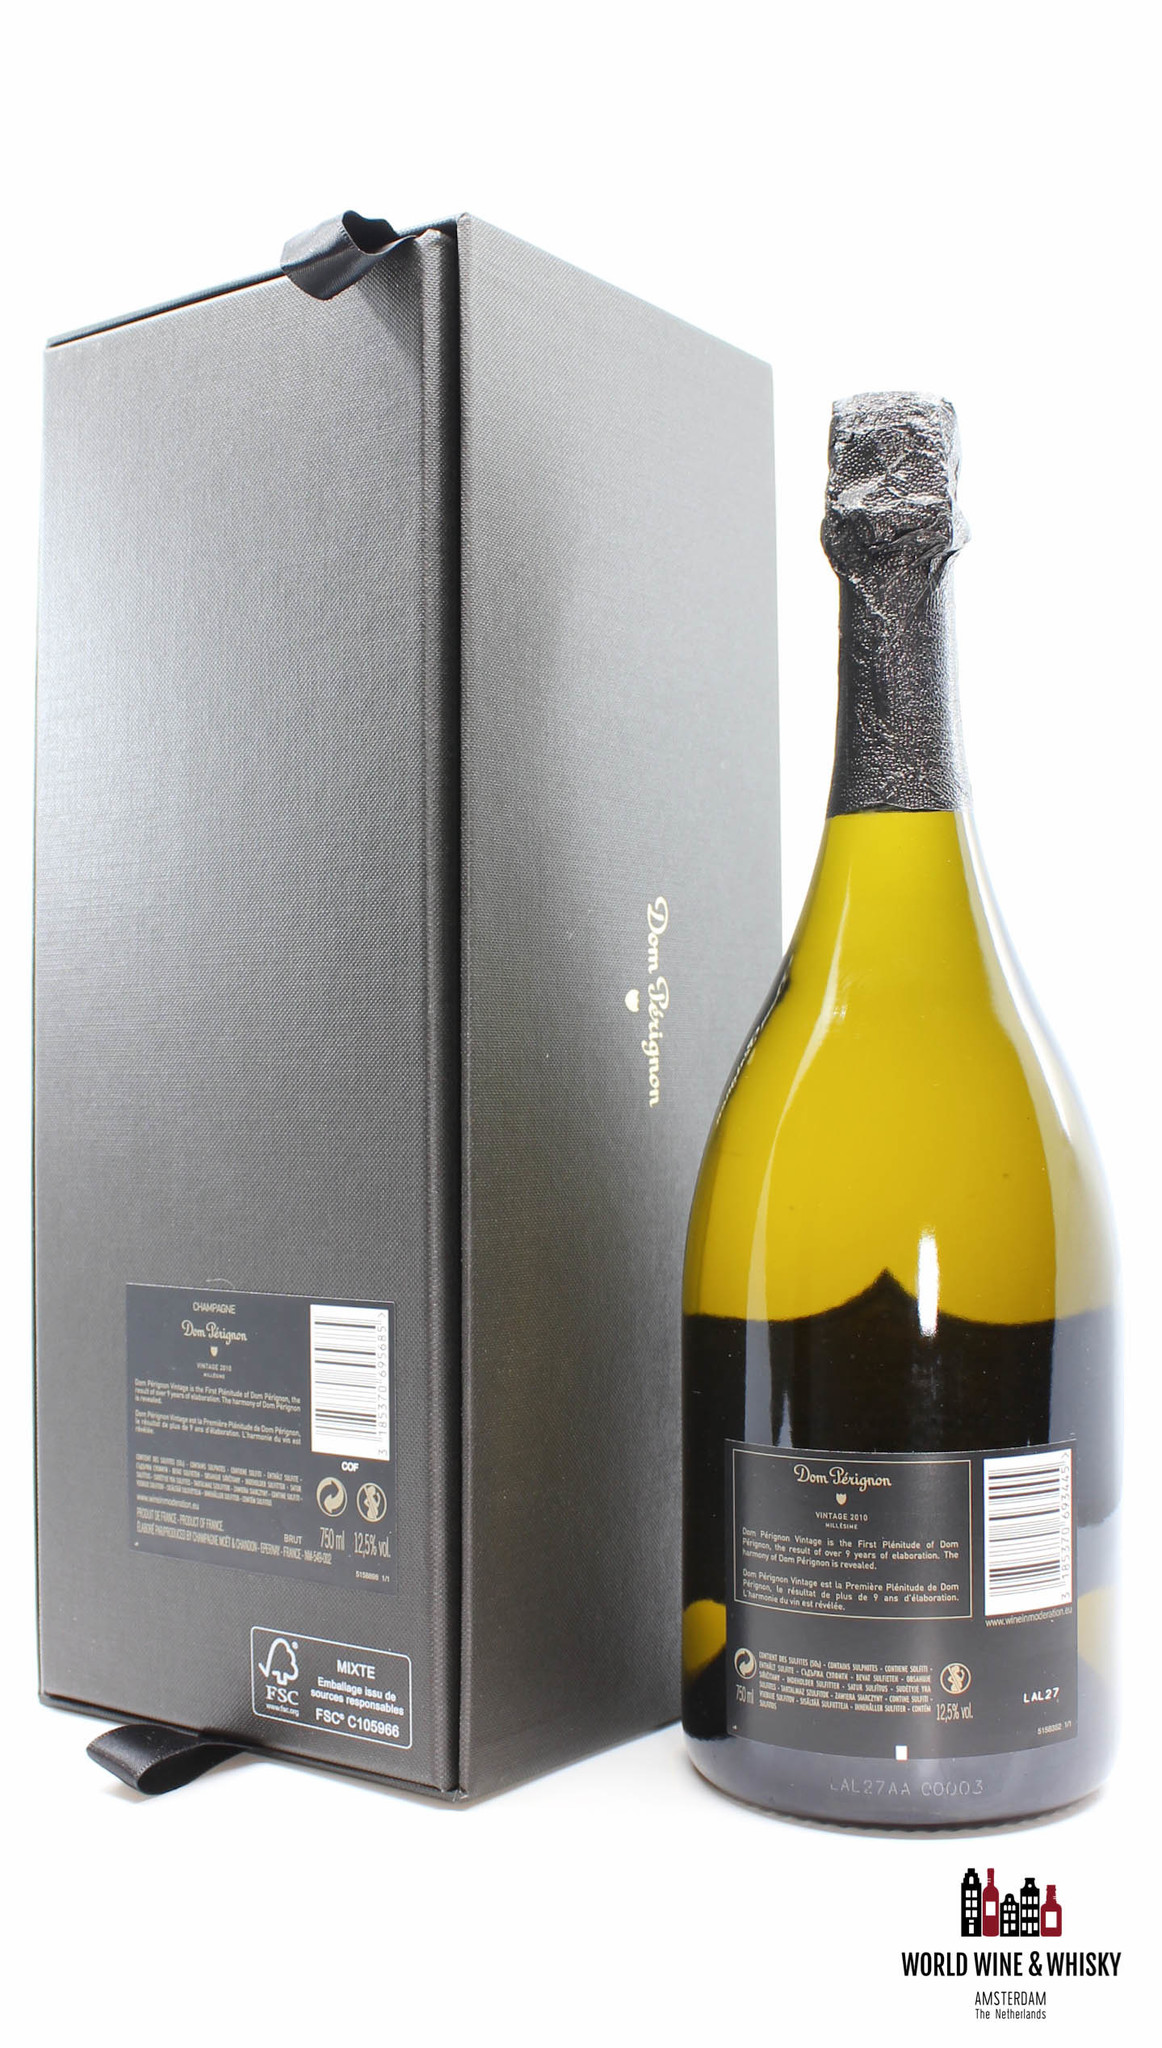 Dom Perignon Dom Perignon 2010 Vintage - Champagne Brut (in luxury giftbox)